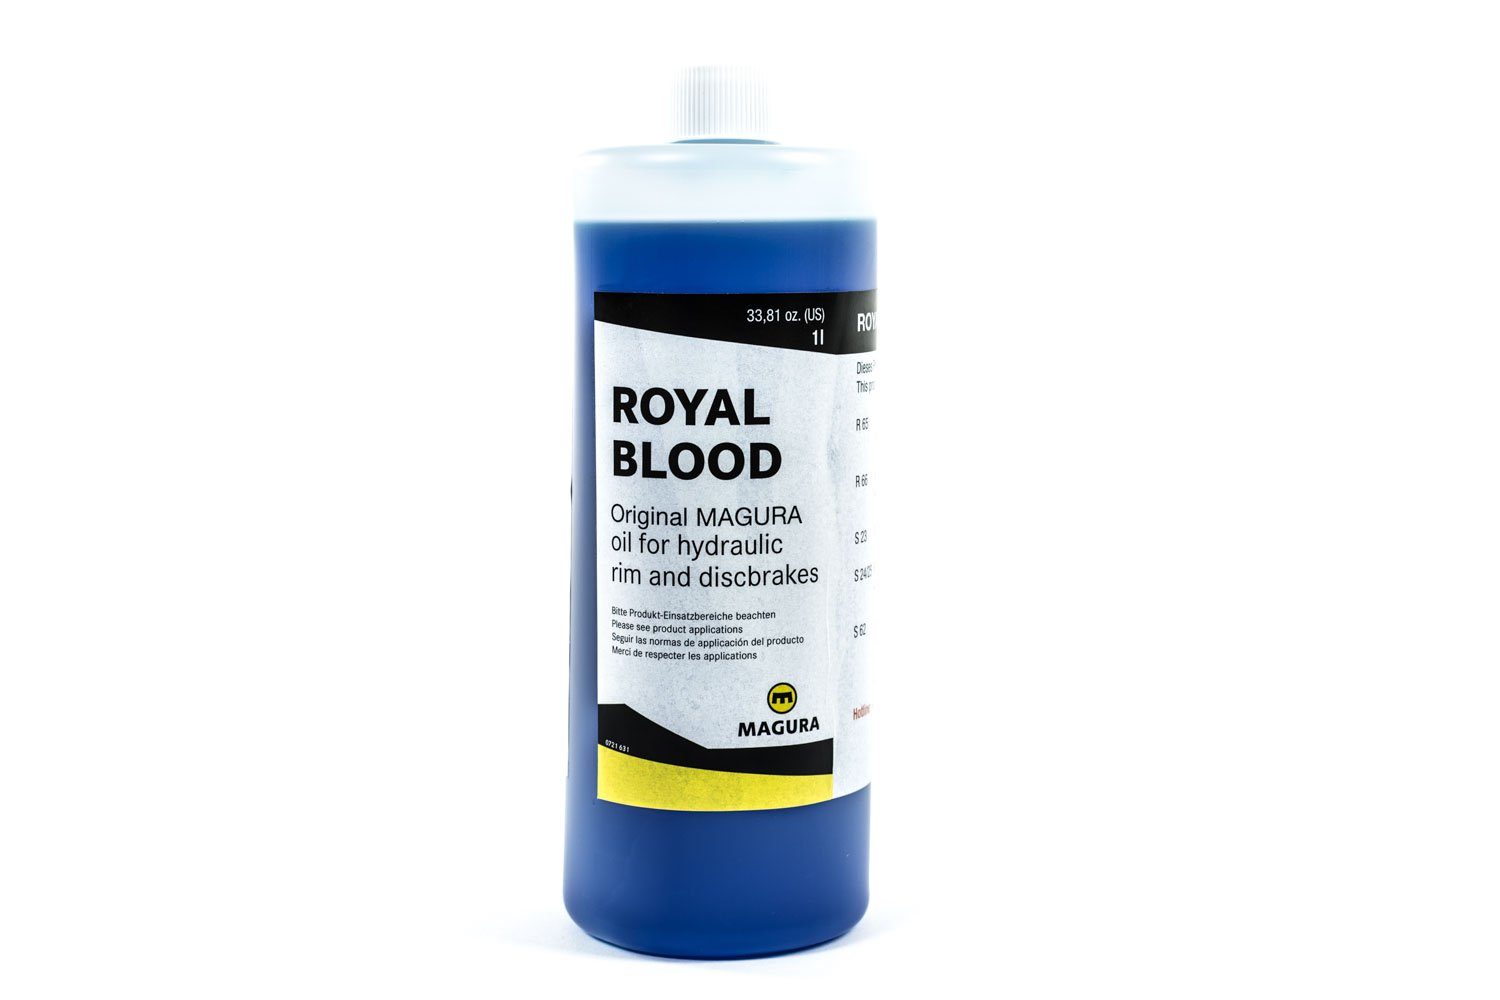 Magura Felgenbremse Magura Royal Blood 1000ml Bremsflüssigkeit hydraulische Felgen Scheibe